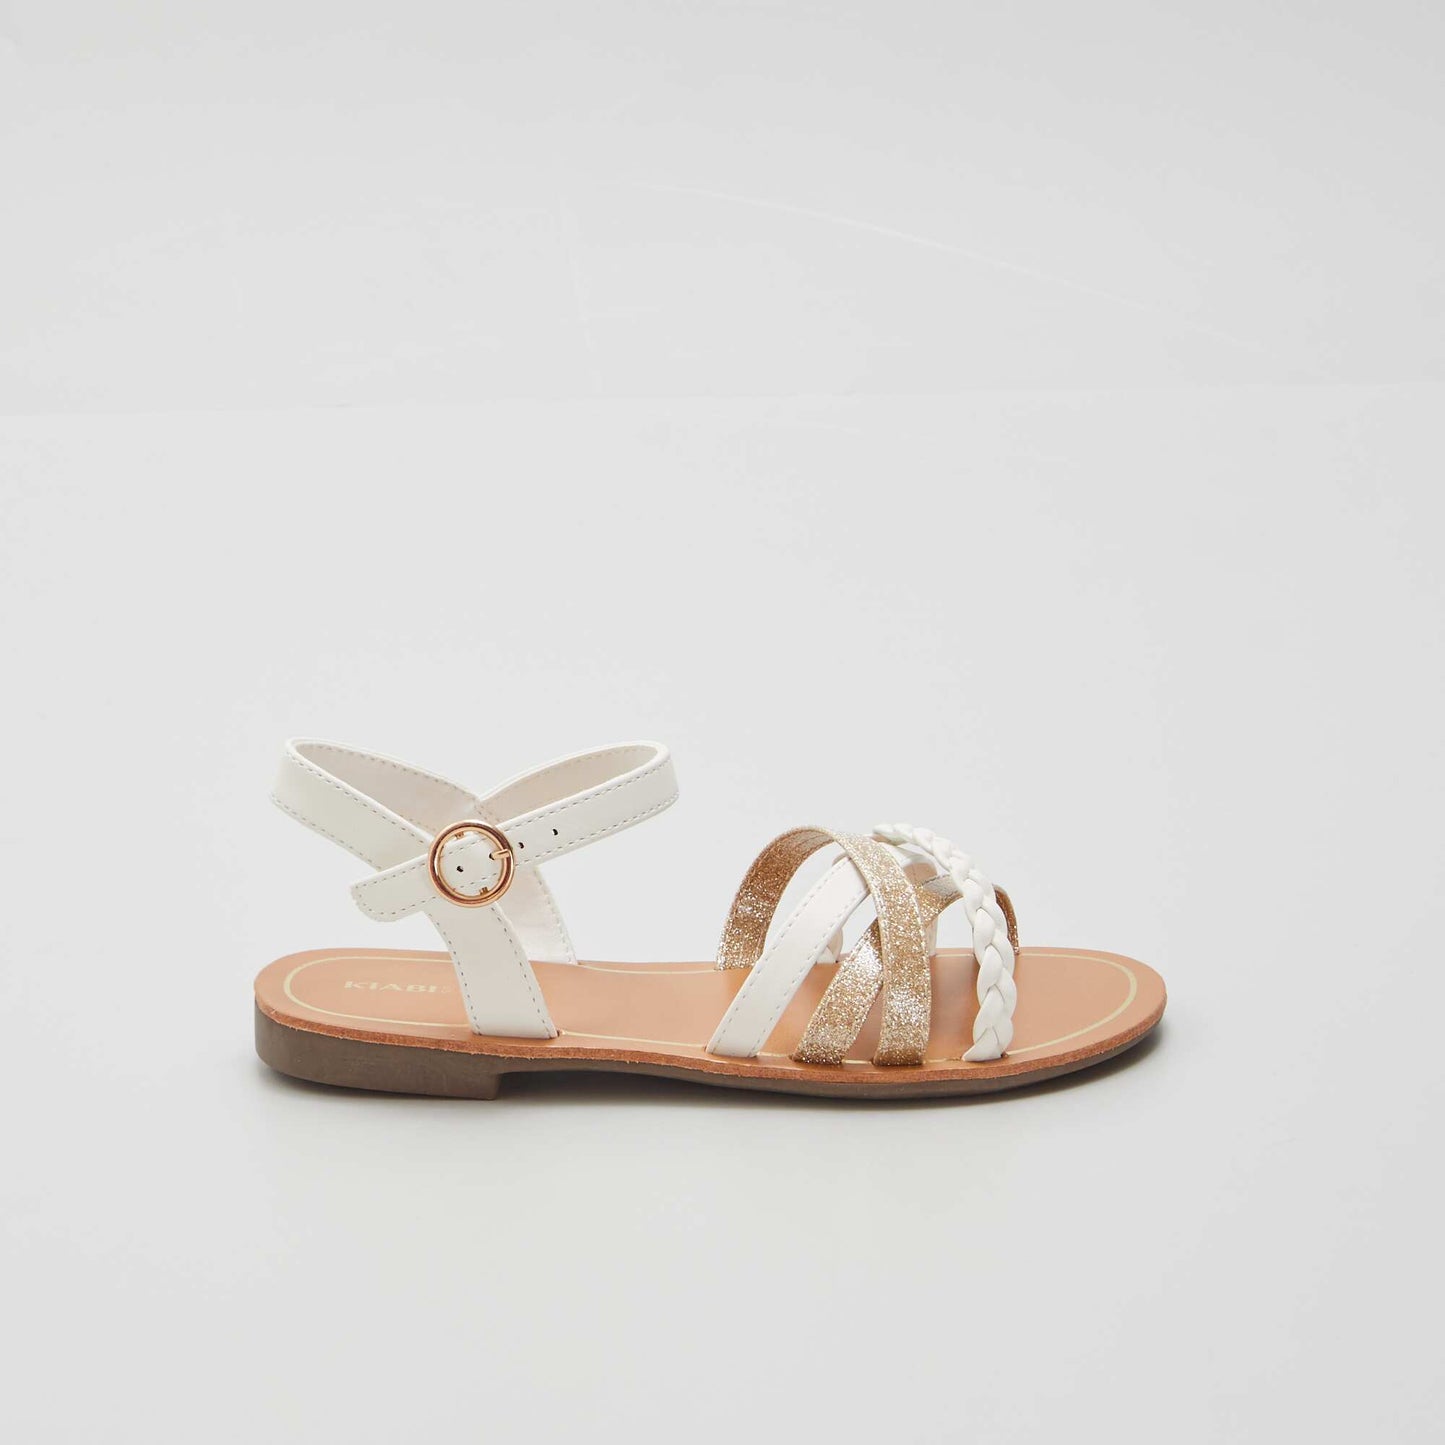 Multi-strap sandals white